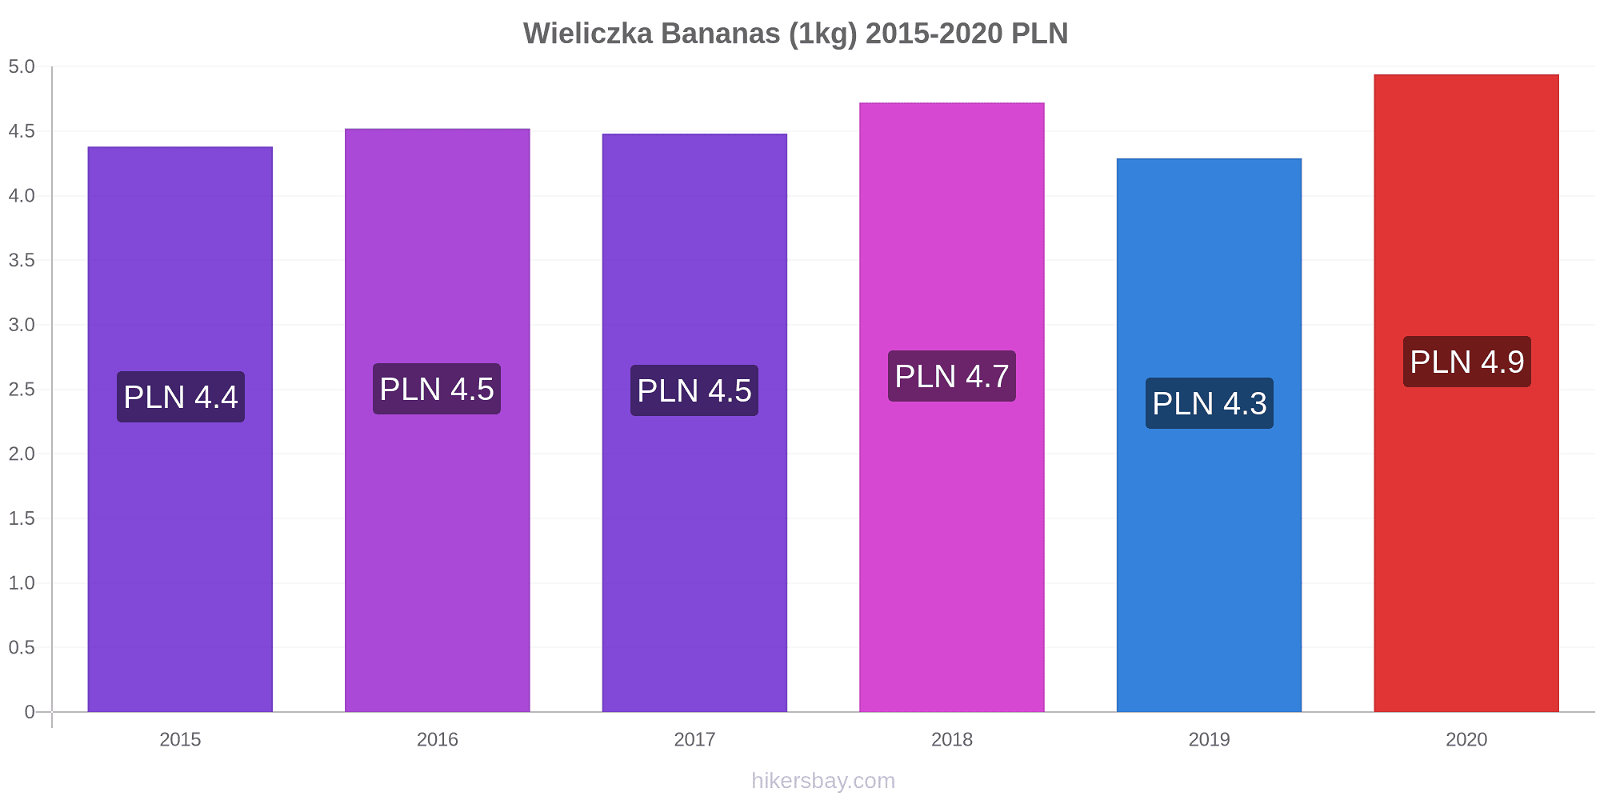 Wieliczka variação de preço Banana (1kg) hikersbay.com